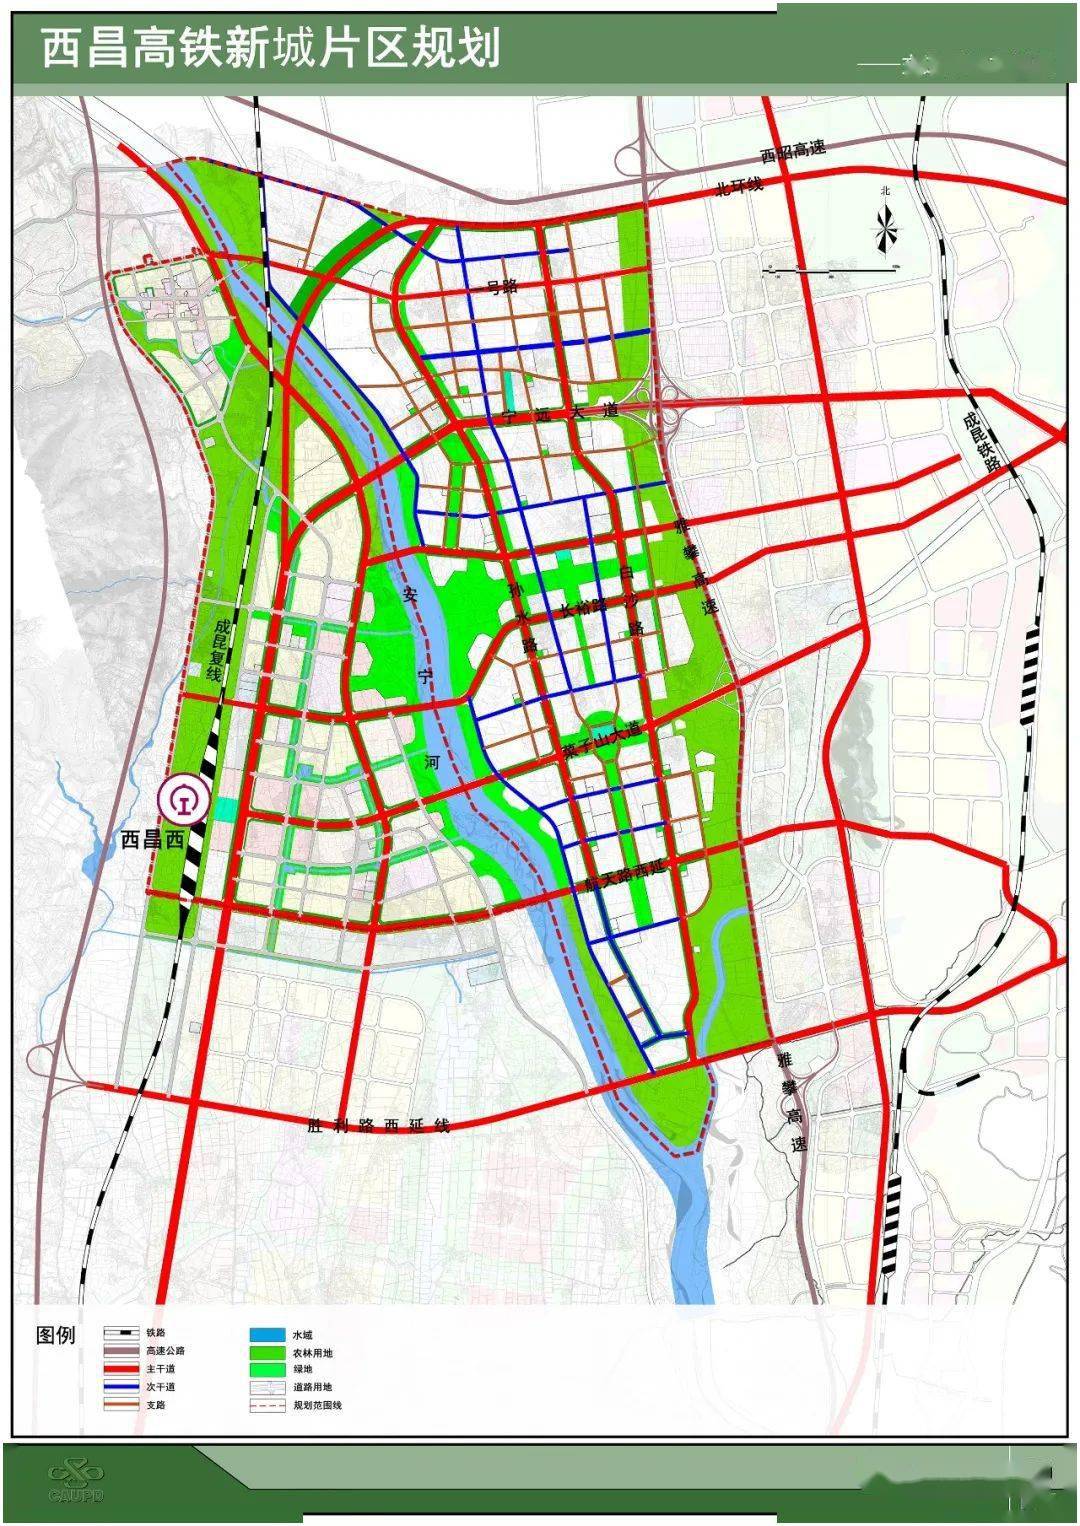 三沙市人口11万_2050年的三沙市大胆规划 轻轨,高铁都有,人口限制在20万